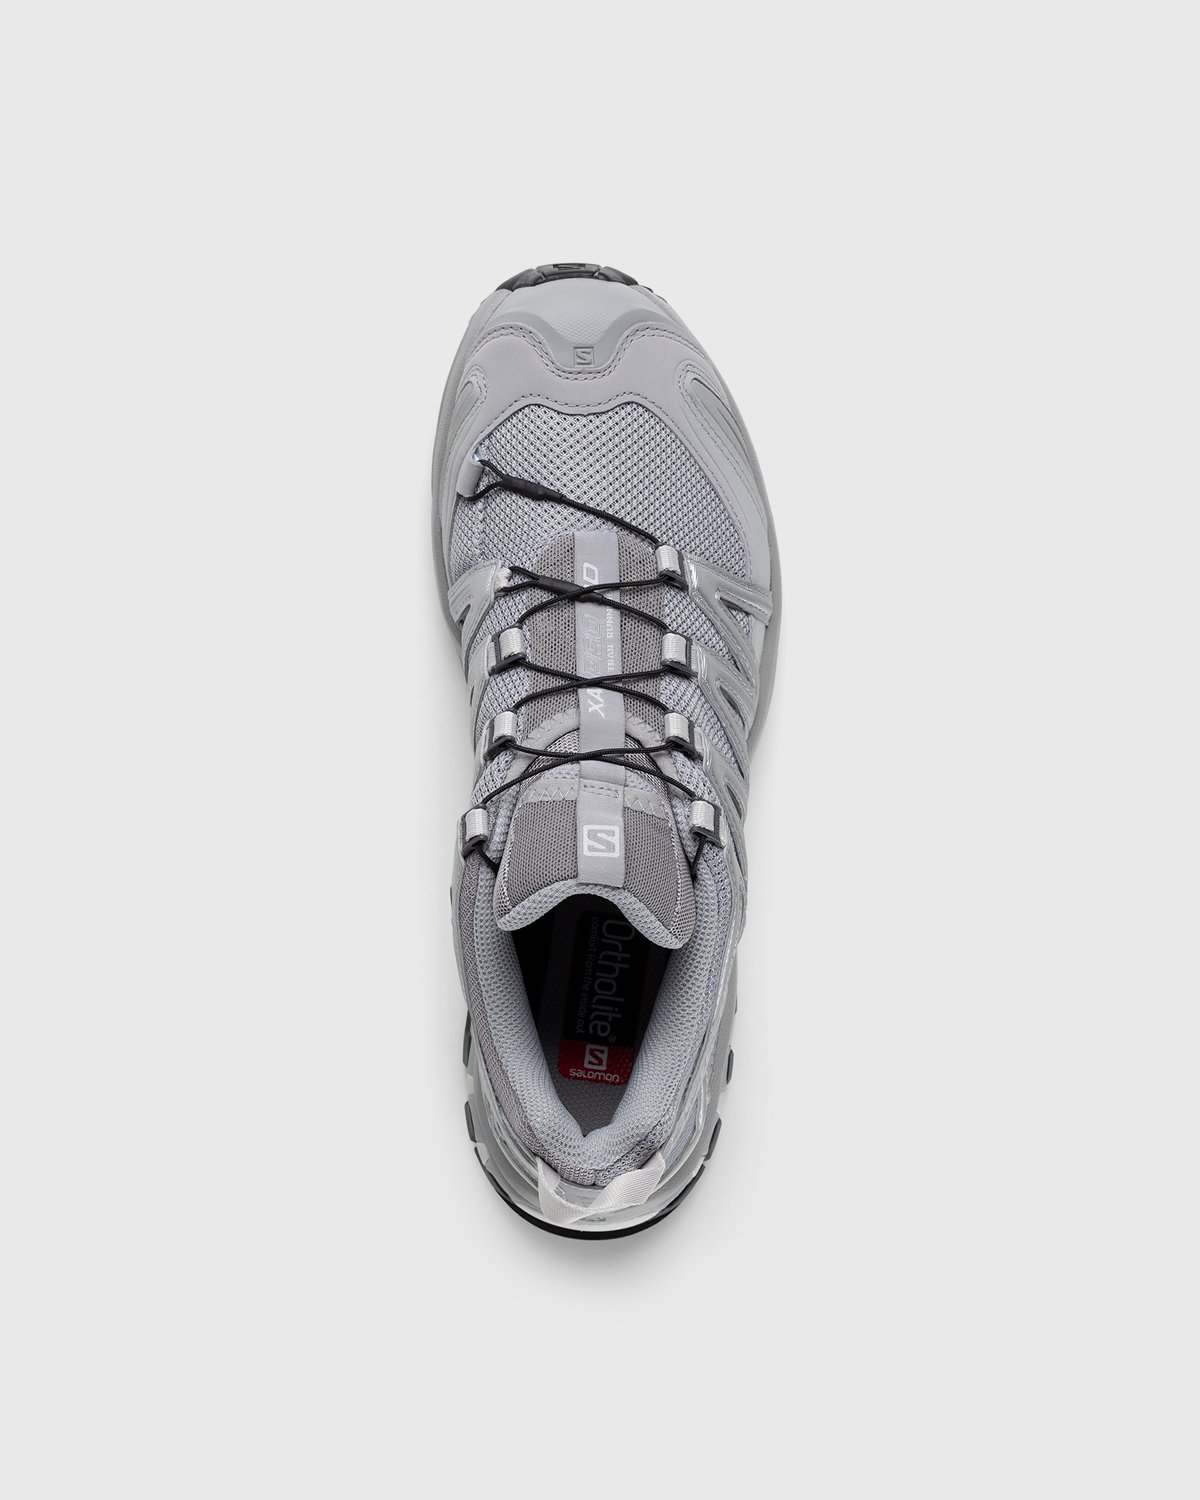 Salomon - XA Pro 3D Alloy/Silver/Lunar Rock - Footwear - White - Image 6